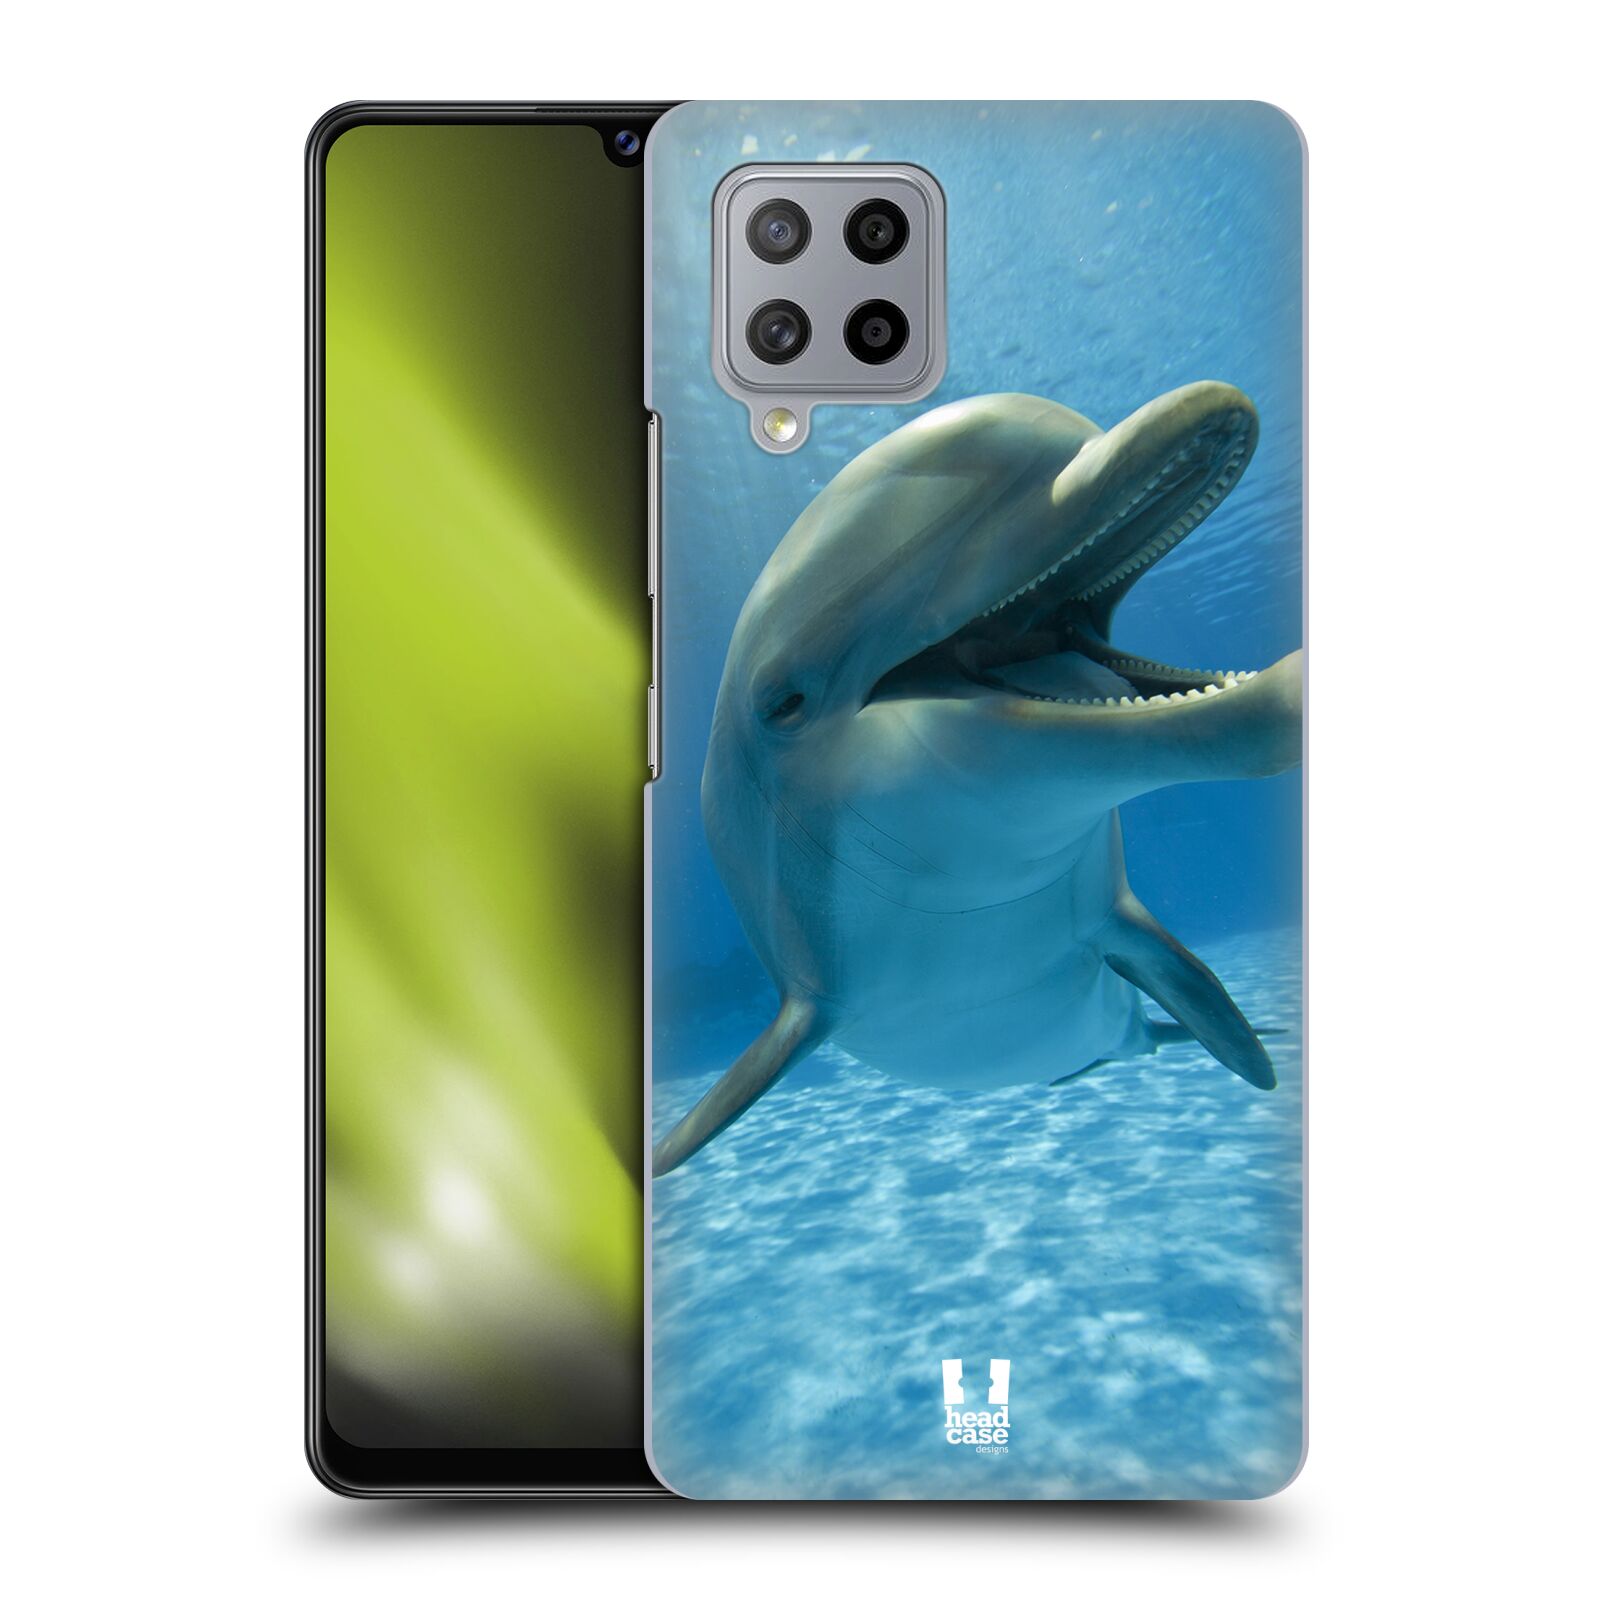 Zadní obal pro mobil Samsung Galaxy A42 5G - HEAD CASE - Svět zvířat delfín v moři